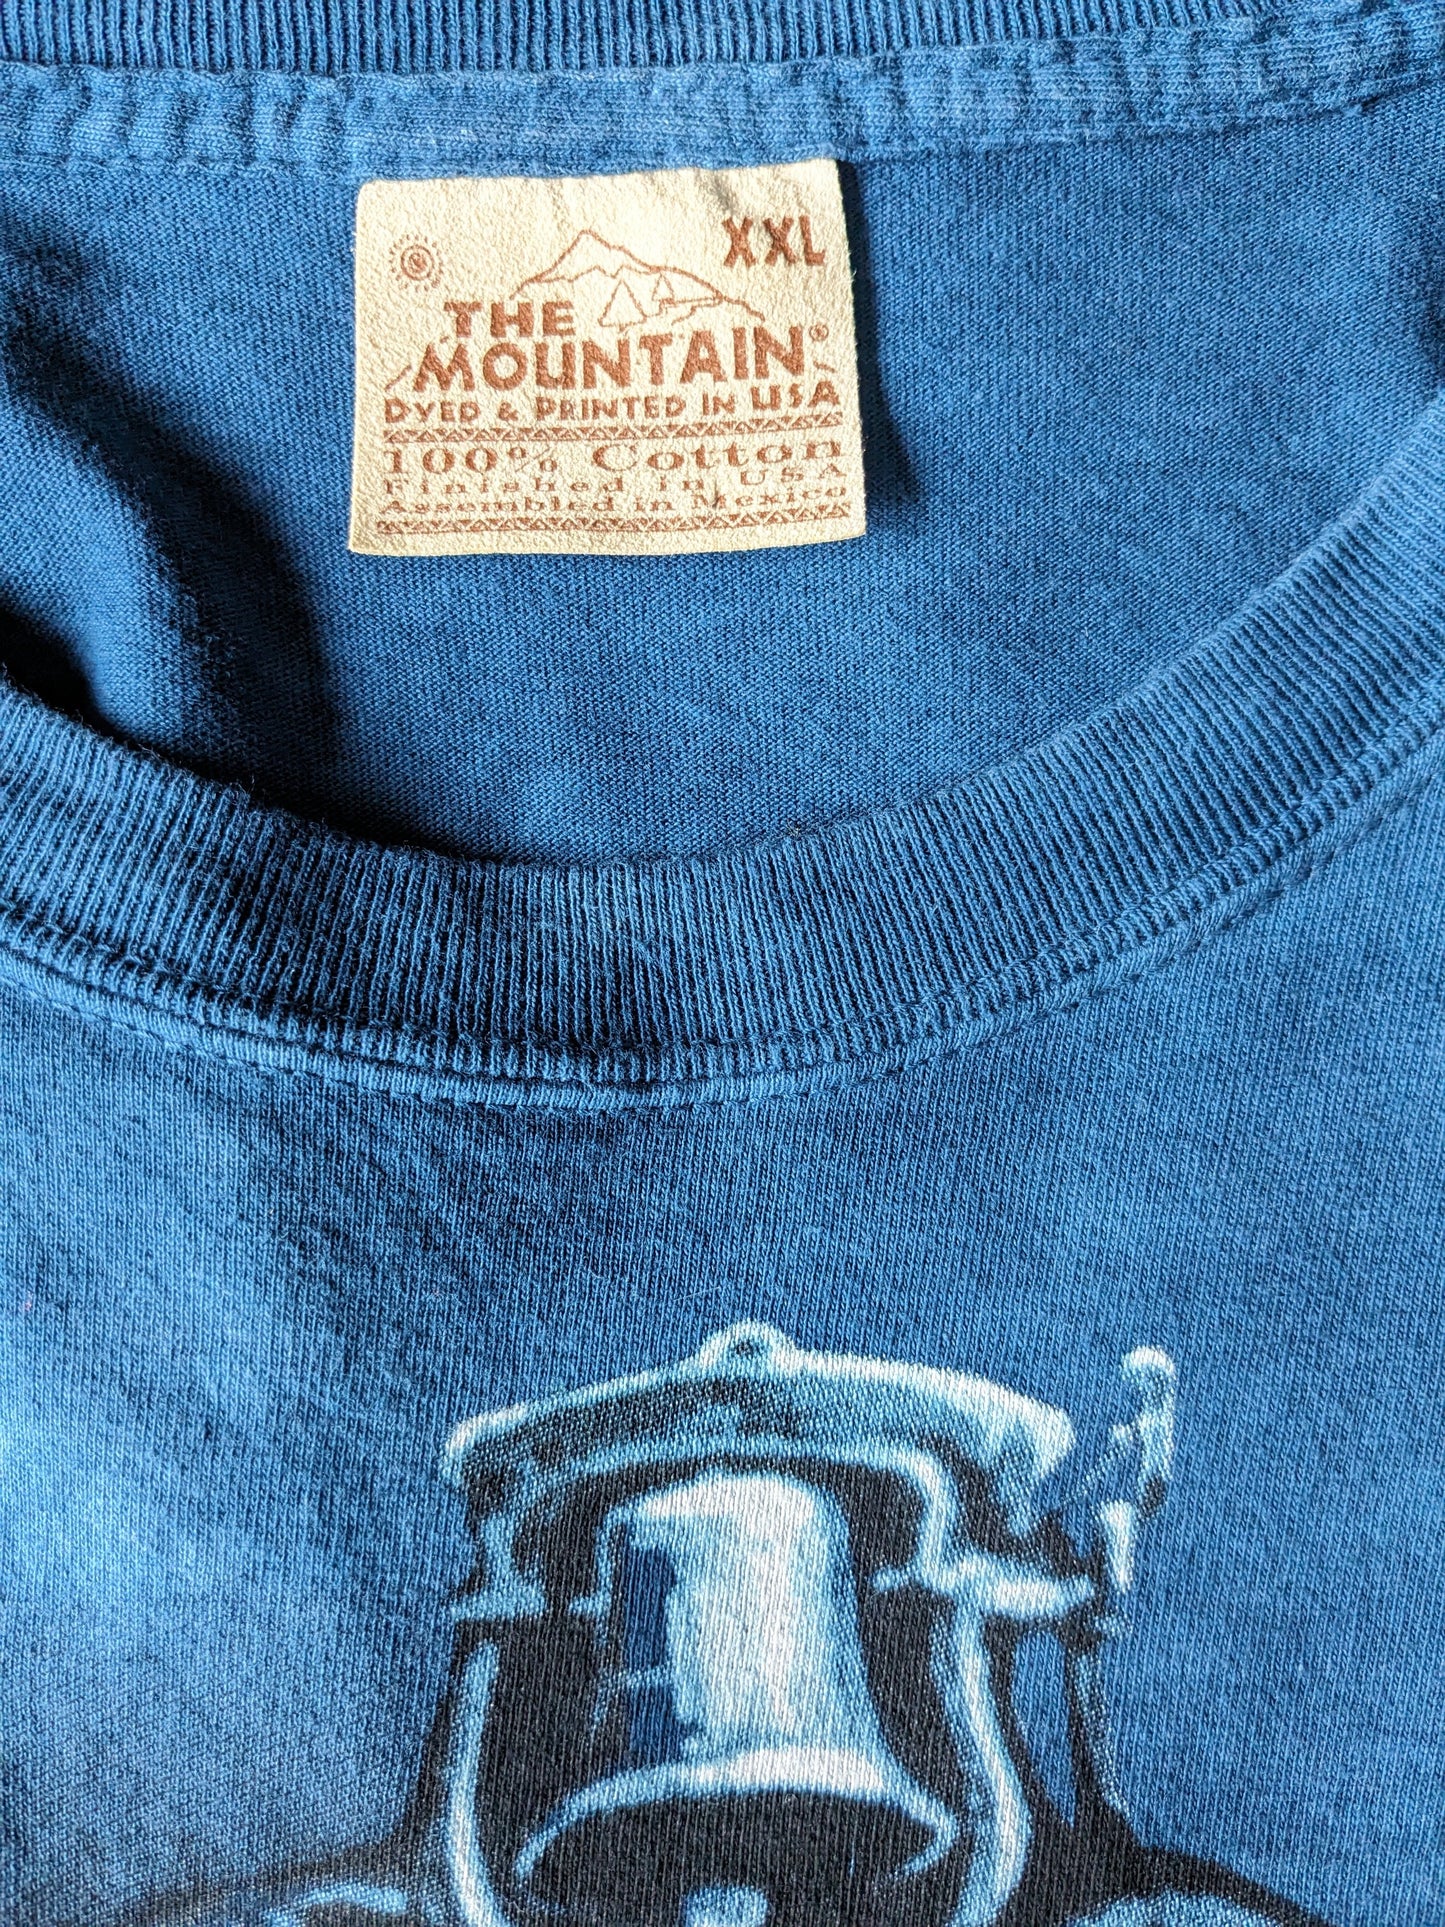 The Mountain shirt. Donker Blauw met Locomotief opdruk. Maat 2XL / XXL.